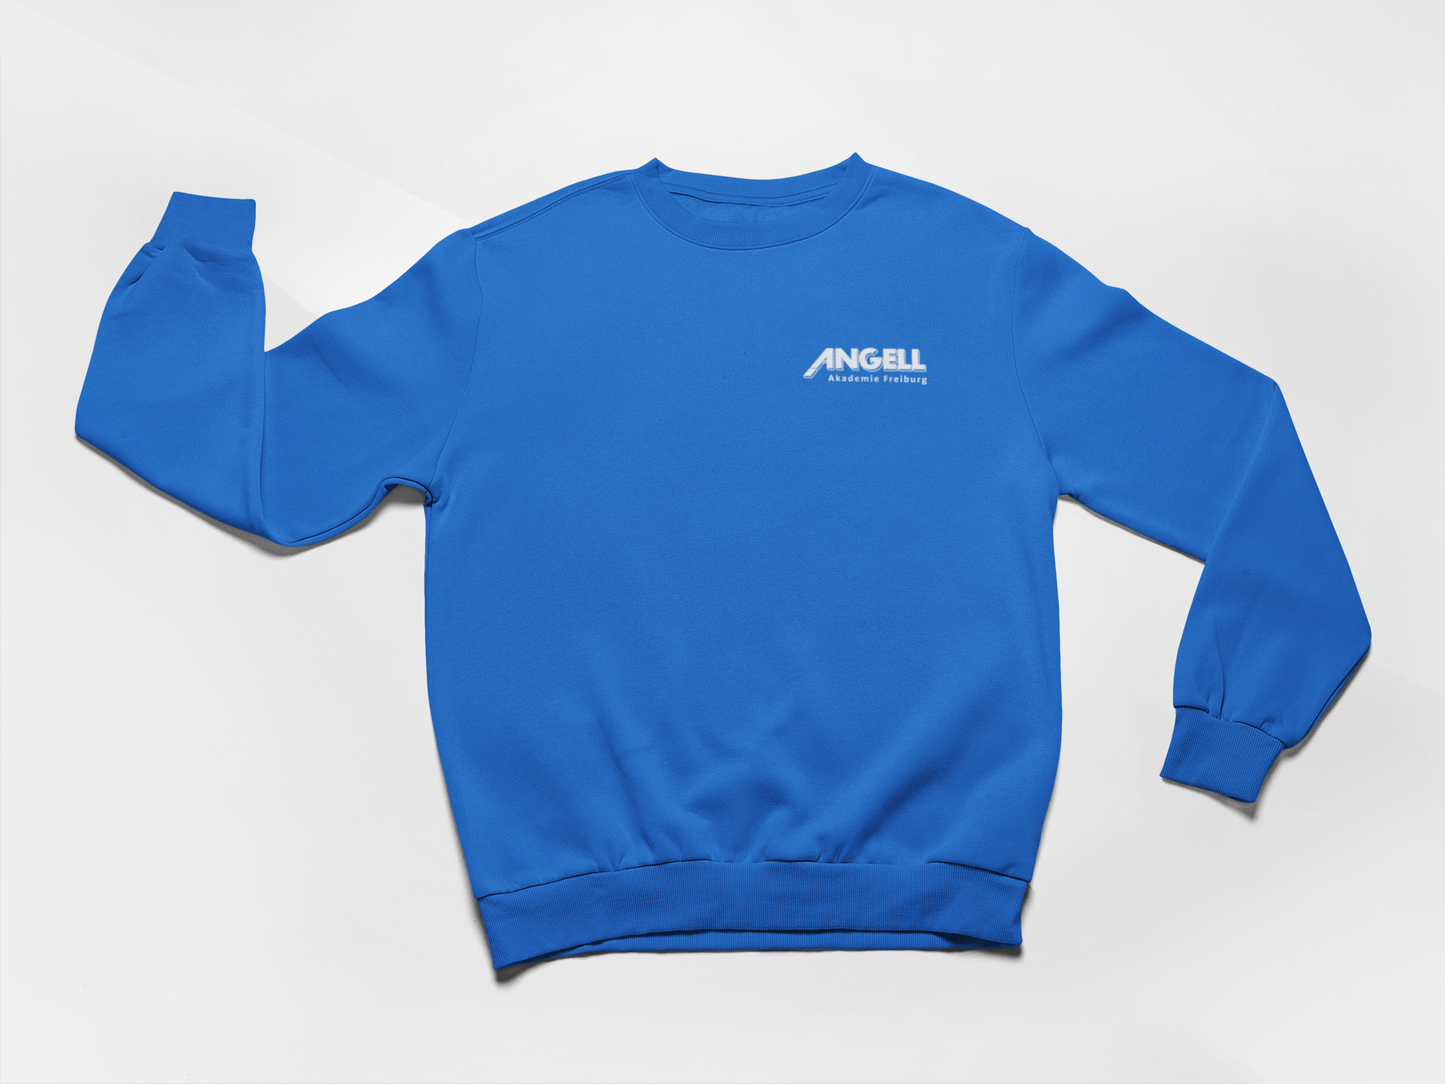 ANGELL Akademie - Organic Sweatshirt (dunkel)